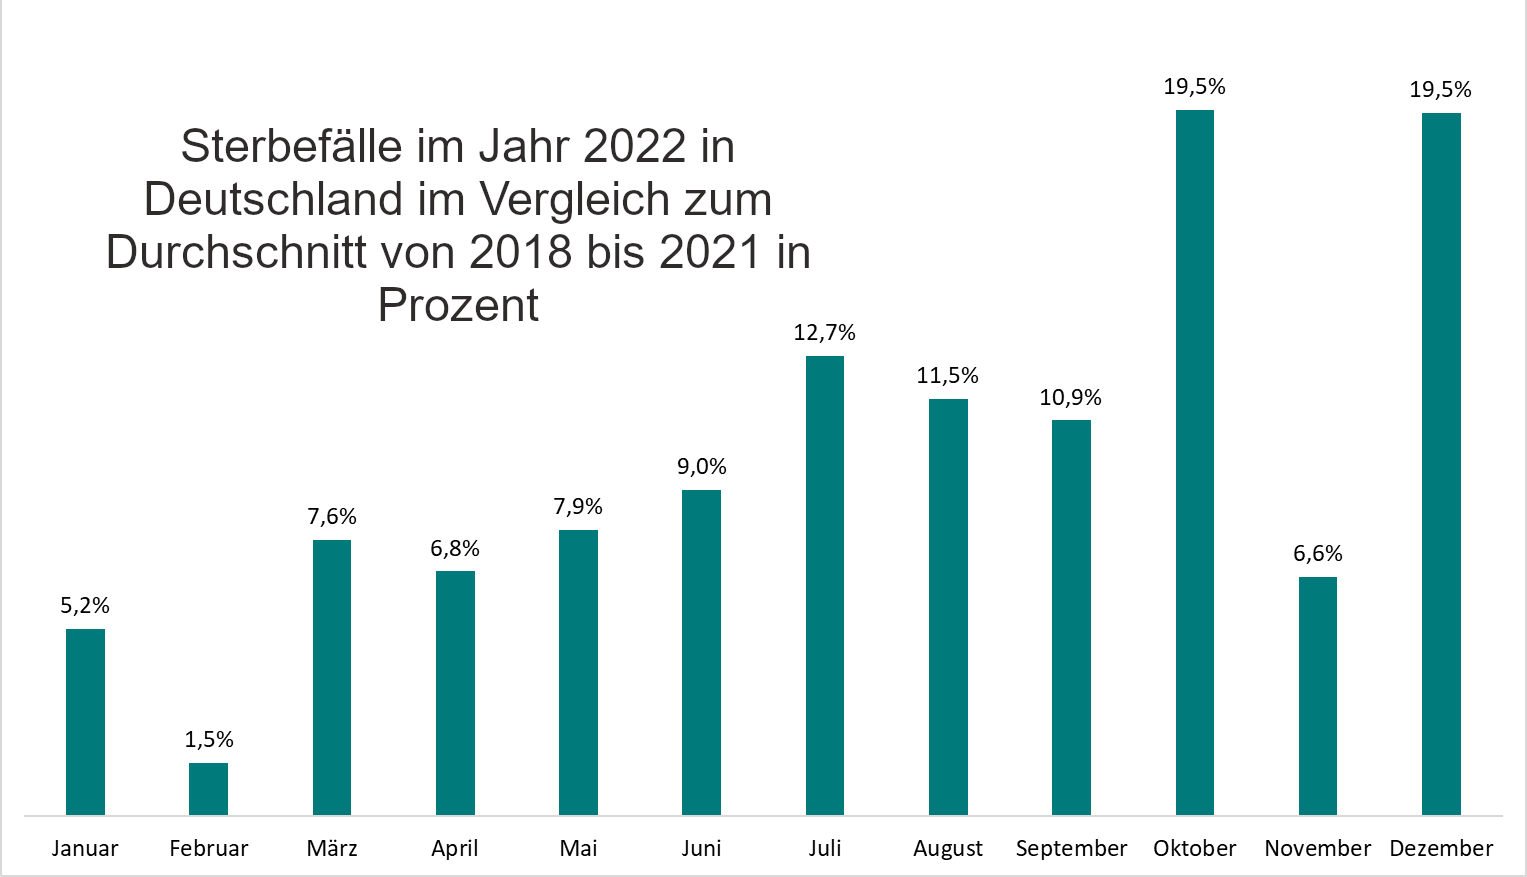 Sterbefälle im Jahr 2022 in Deutschland im Vergleich zum Durchschnitt von 2018 bis 2021 in Prozent